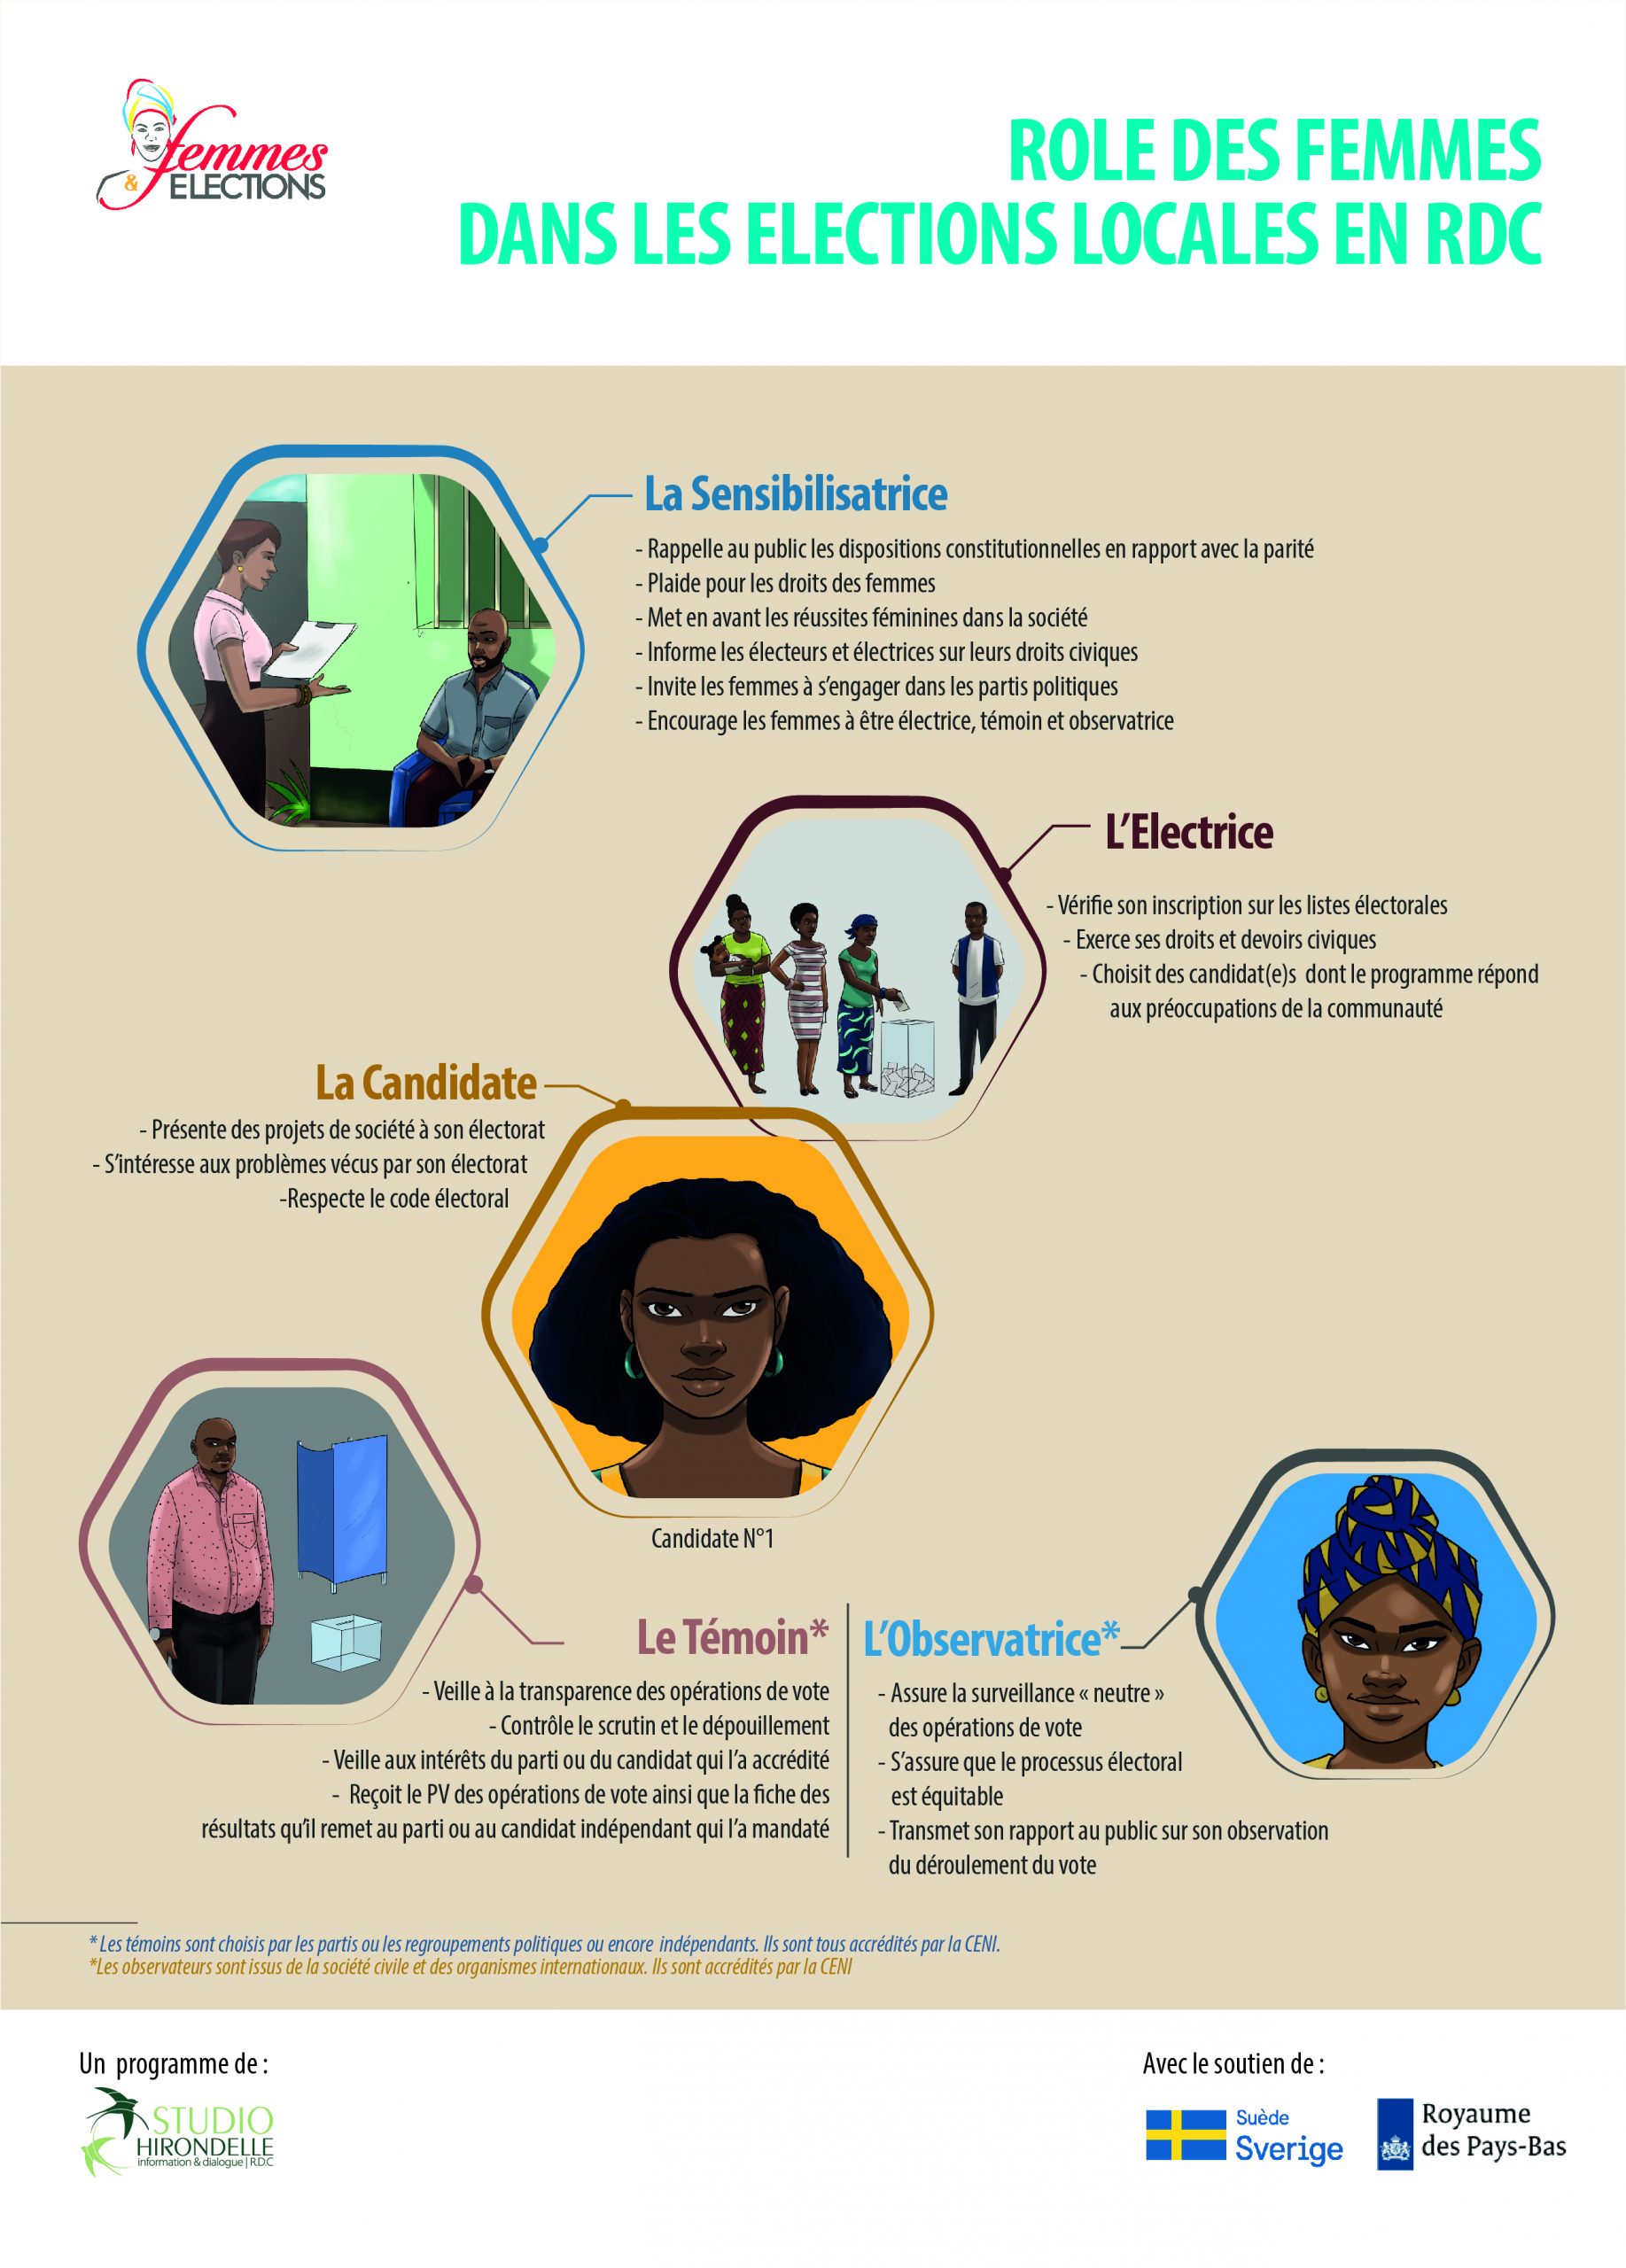 RDC : Rôle des femmes dans les élections locales